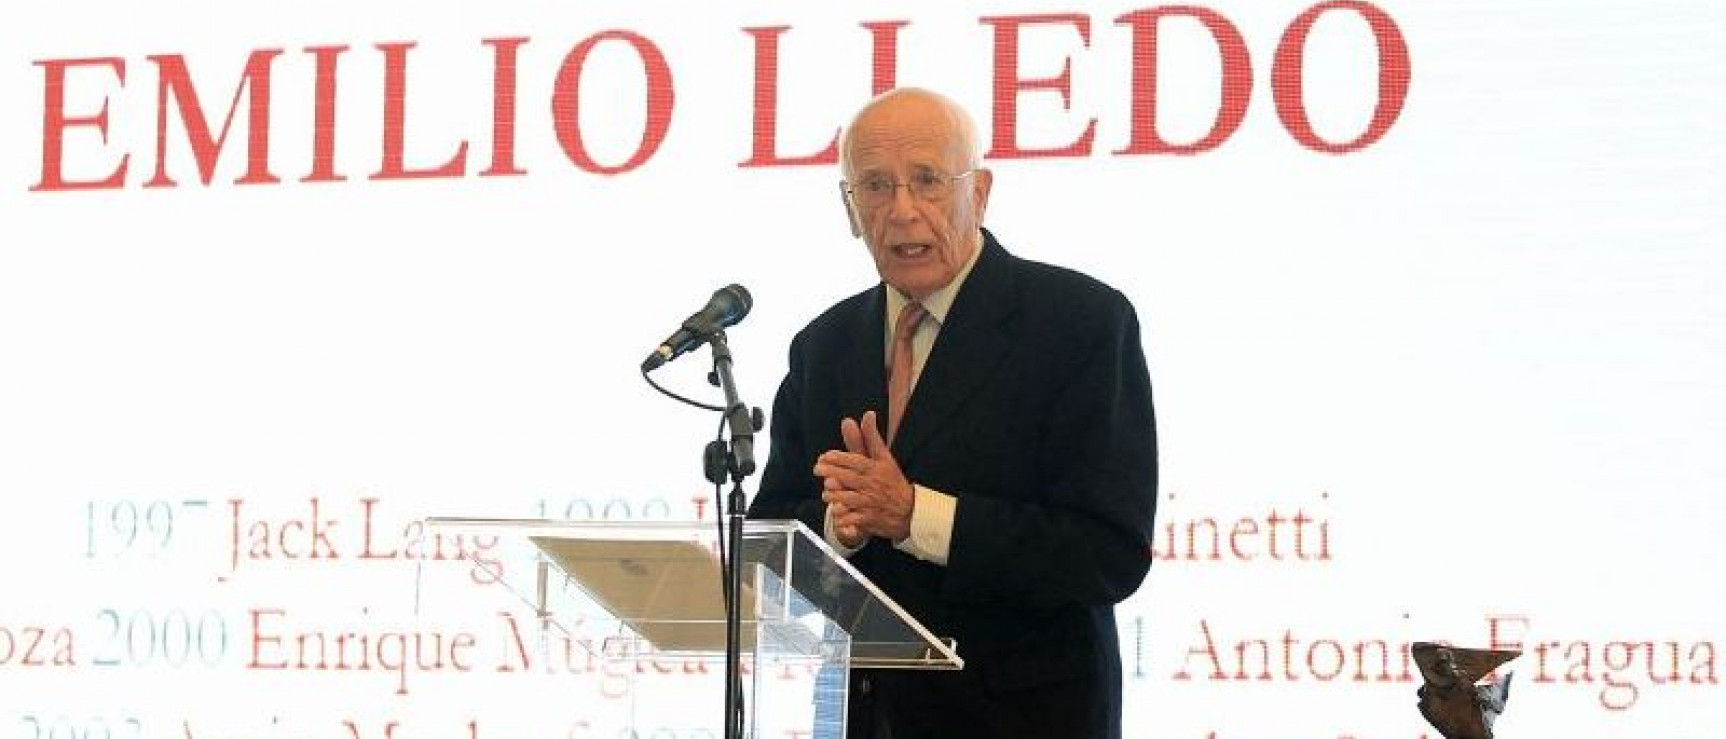 Emilio Lledó, Premio Princesa de Asturias de Comunicación y Humanidades 2015.